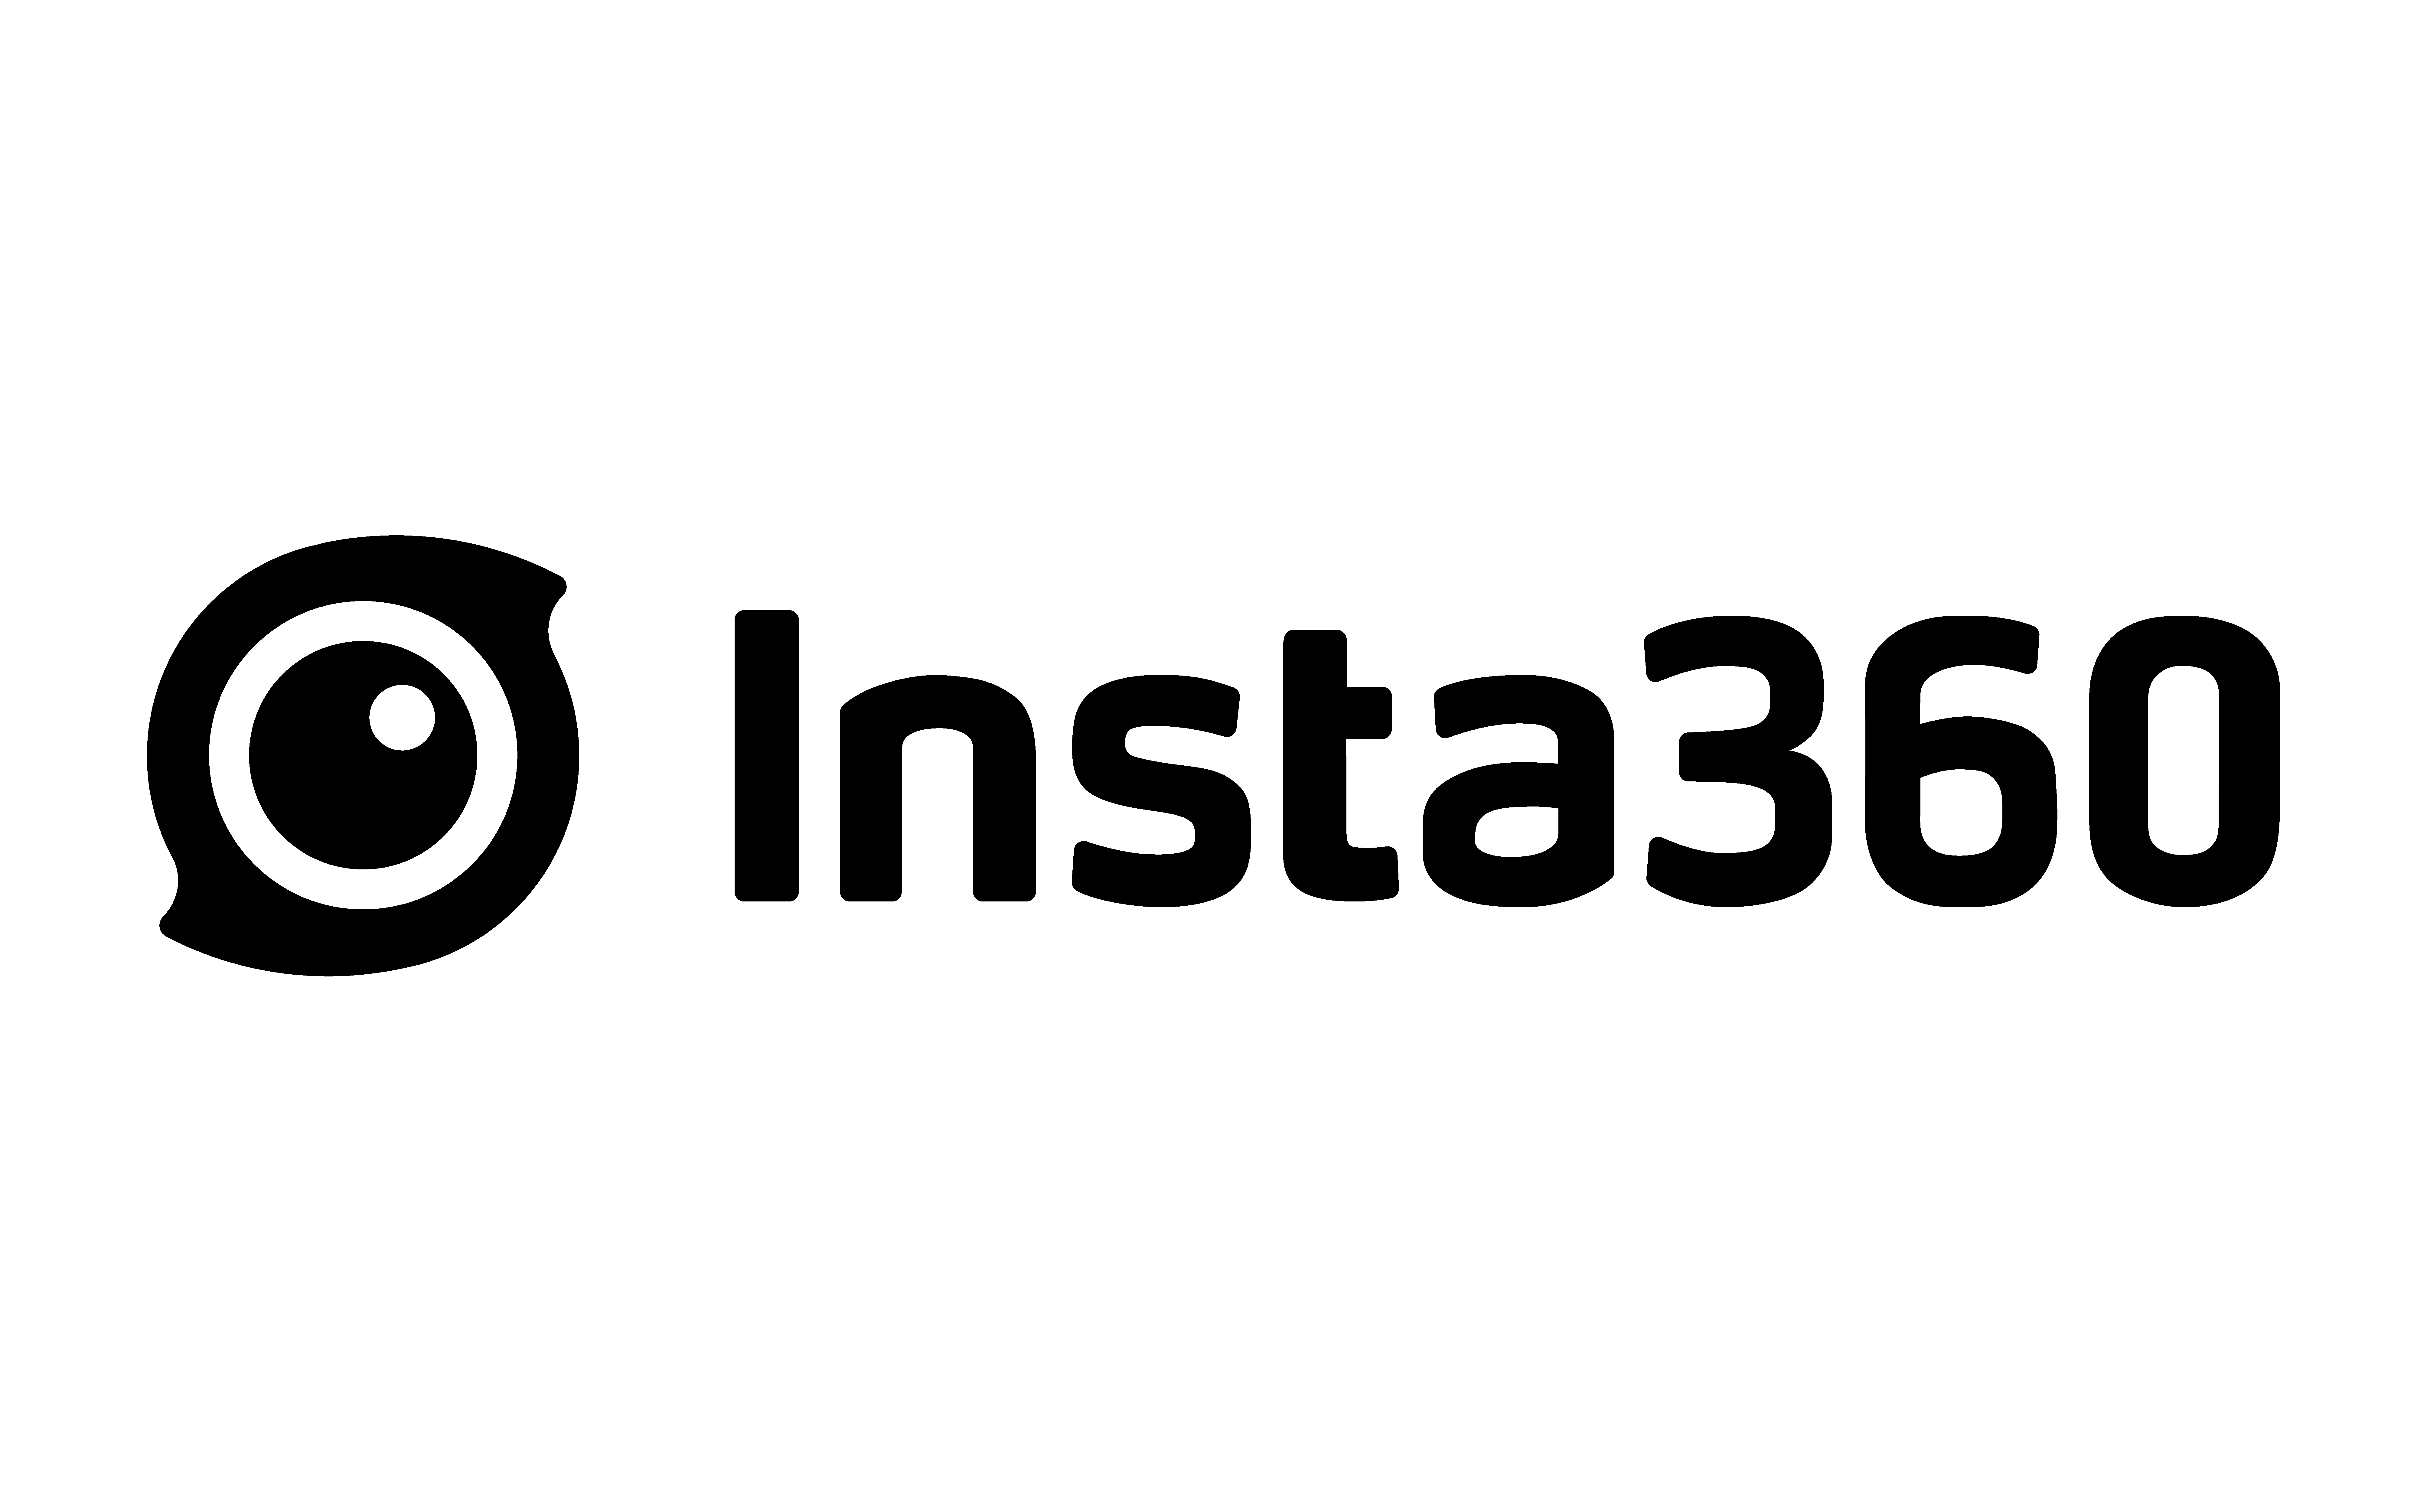 מצלמת אקטרים Insta 360 Ace Pro 8k